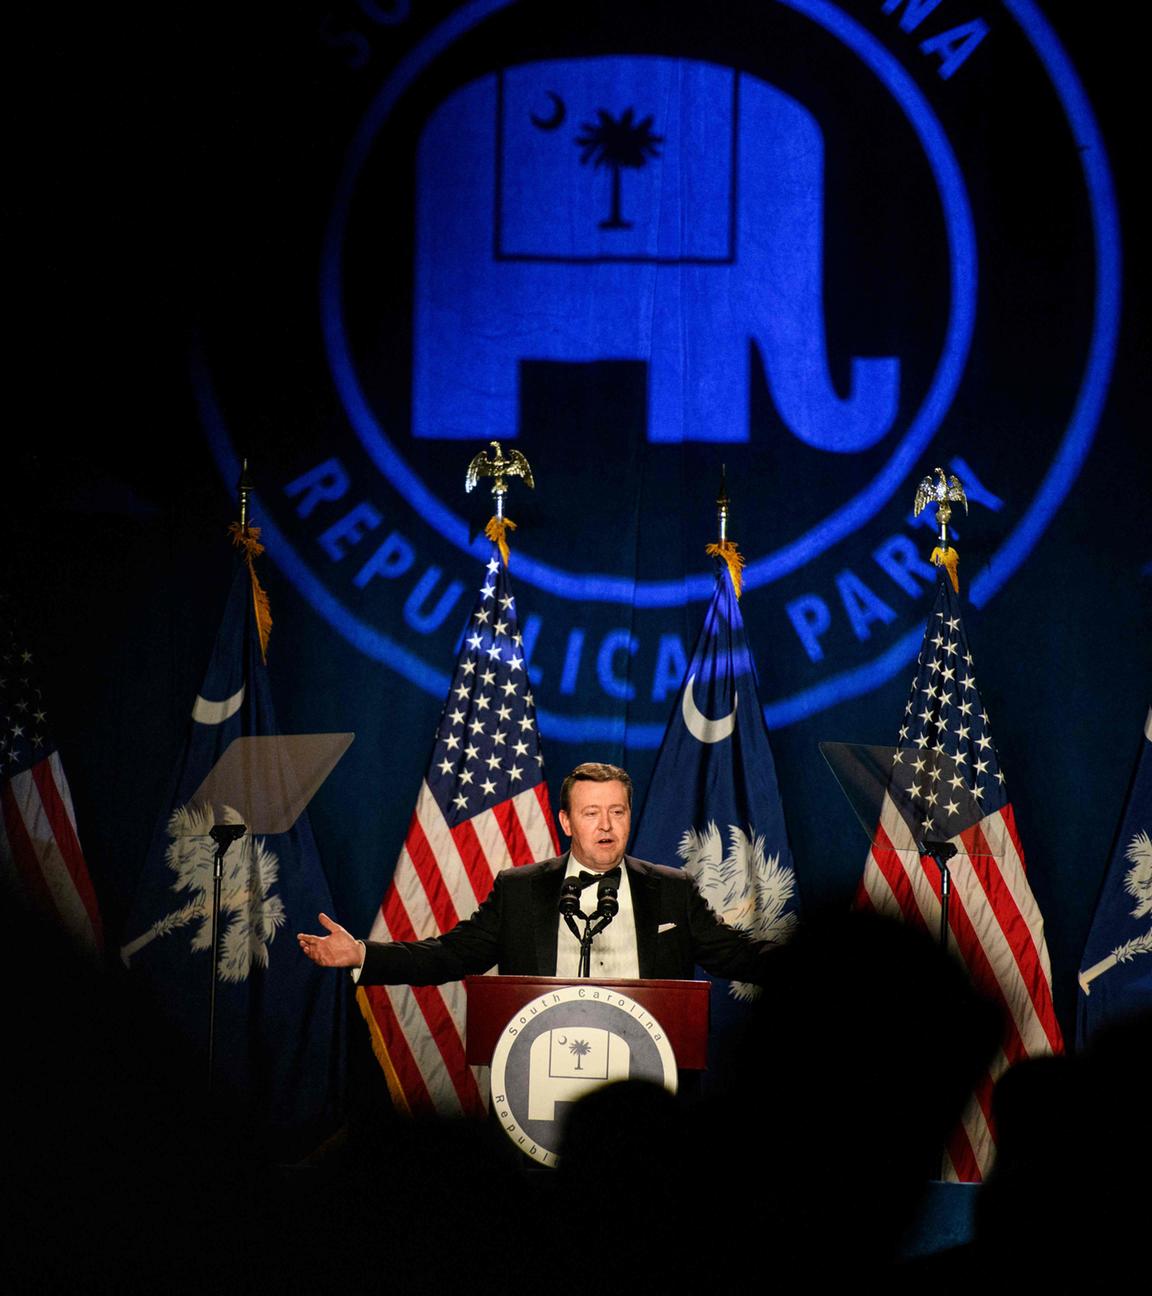 Ein Mann steht auf einer Bühne und spricht an einem Pult, vor ihm sind amerikanische Flaggen und im Hintergrund wird das Symbol der republikanischen Partei (der Elefant) angestrahlt.